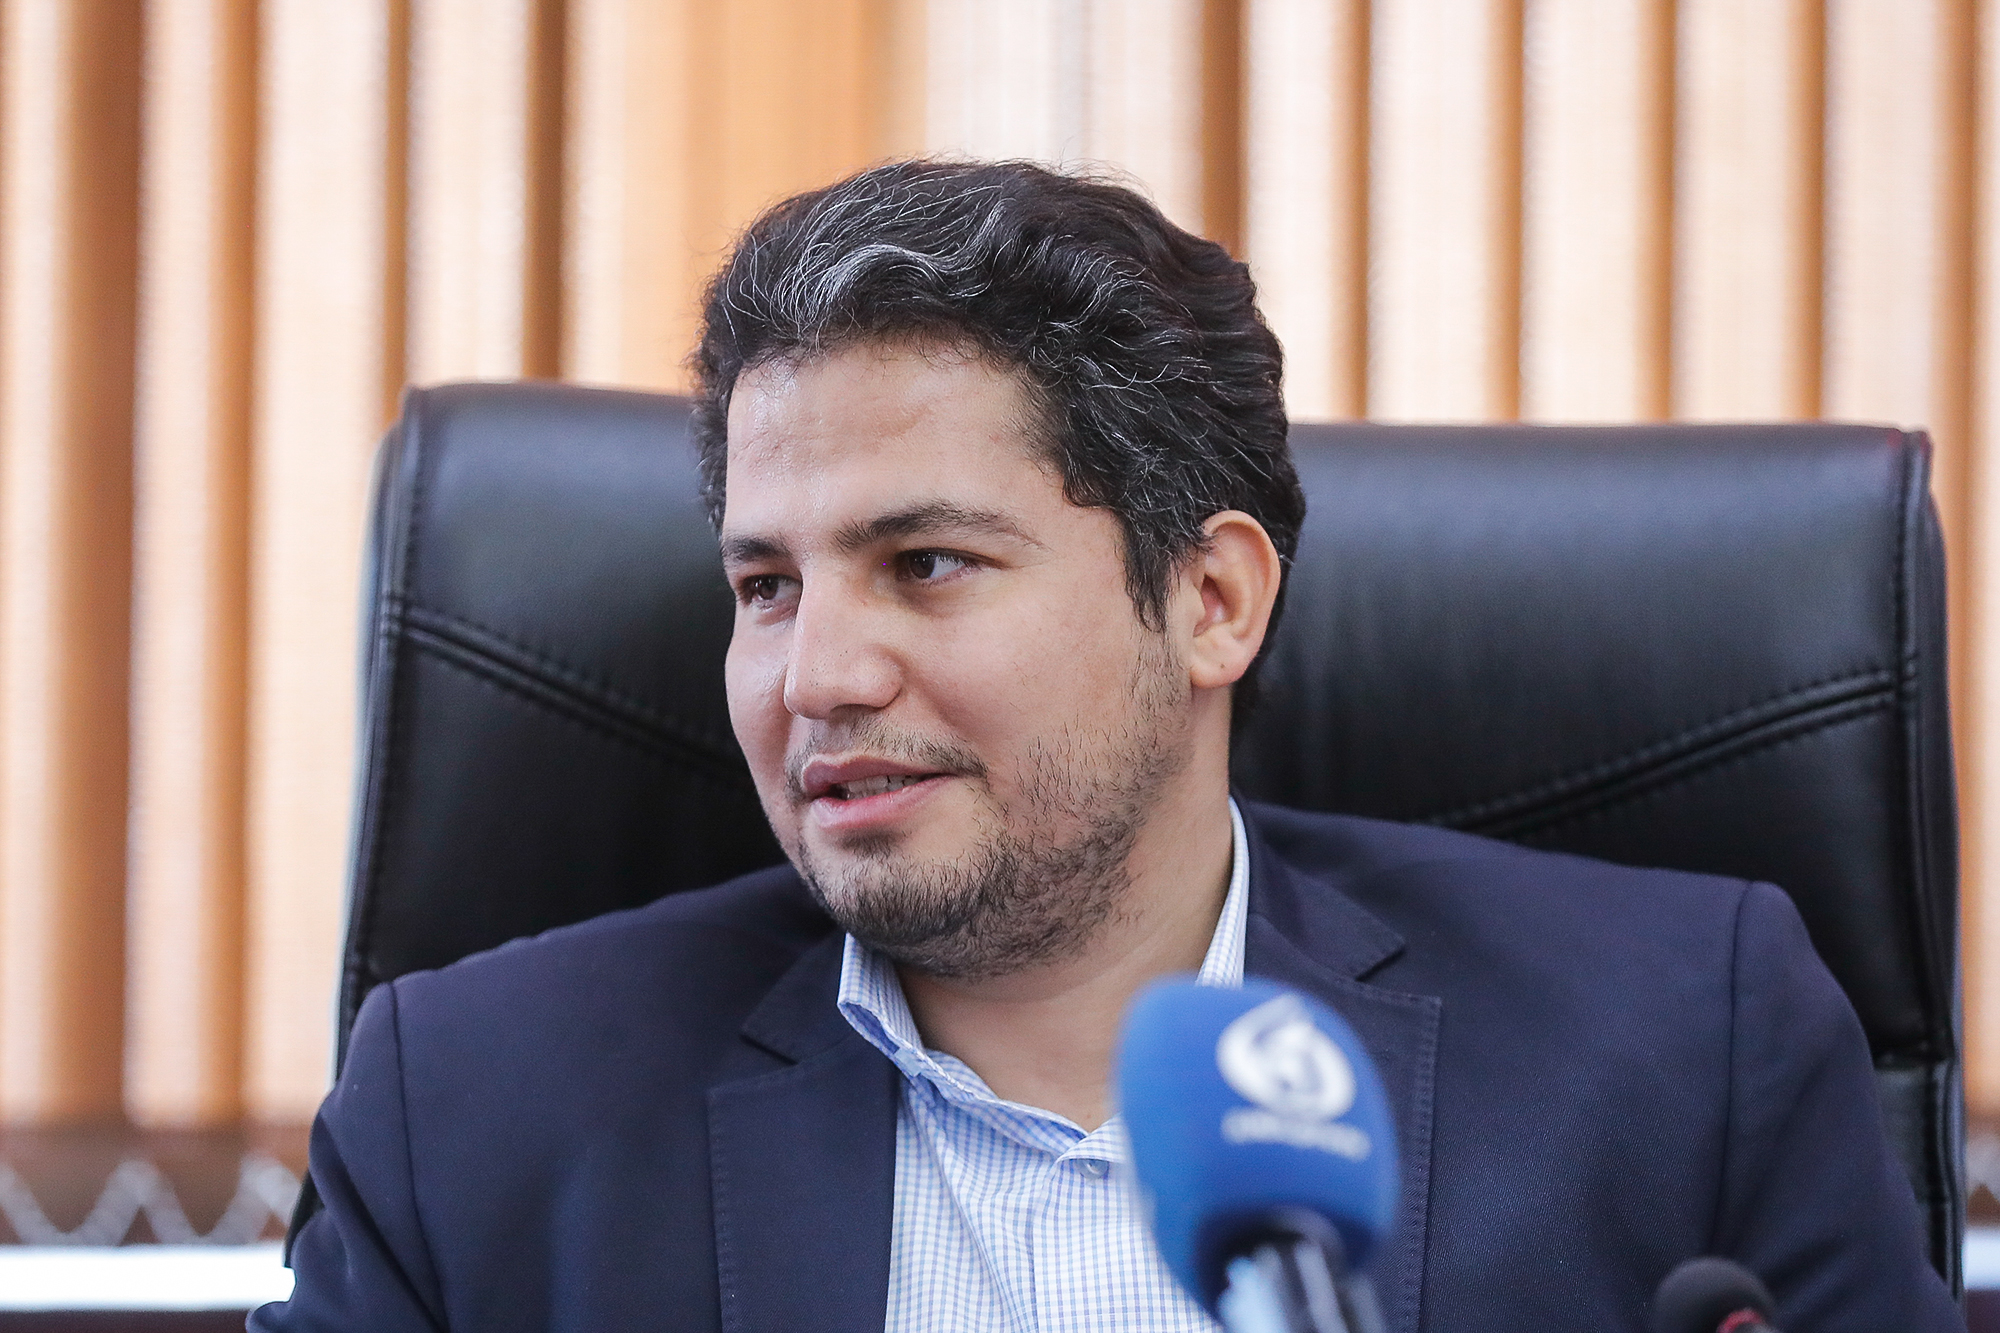 وحید ضرغامی قائم مقام معاونت تحقیقات فناوری و نوآوری دانشگاه آزاد اسلامی